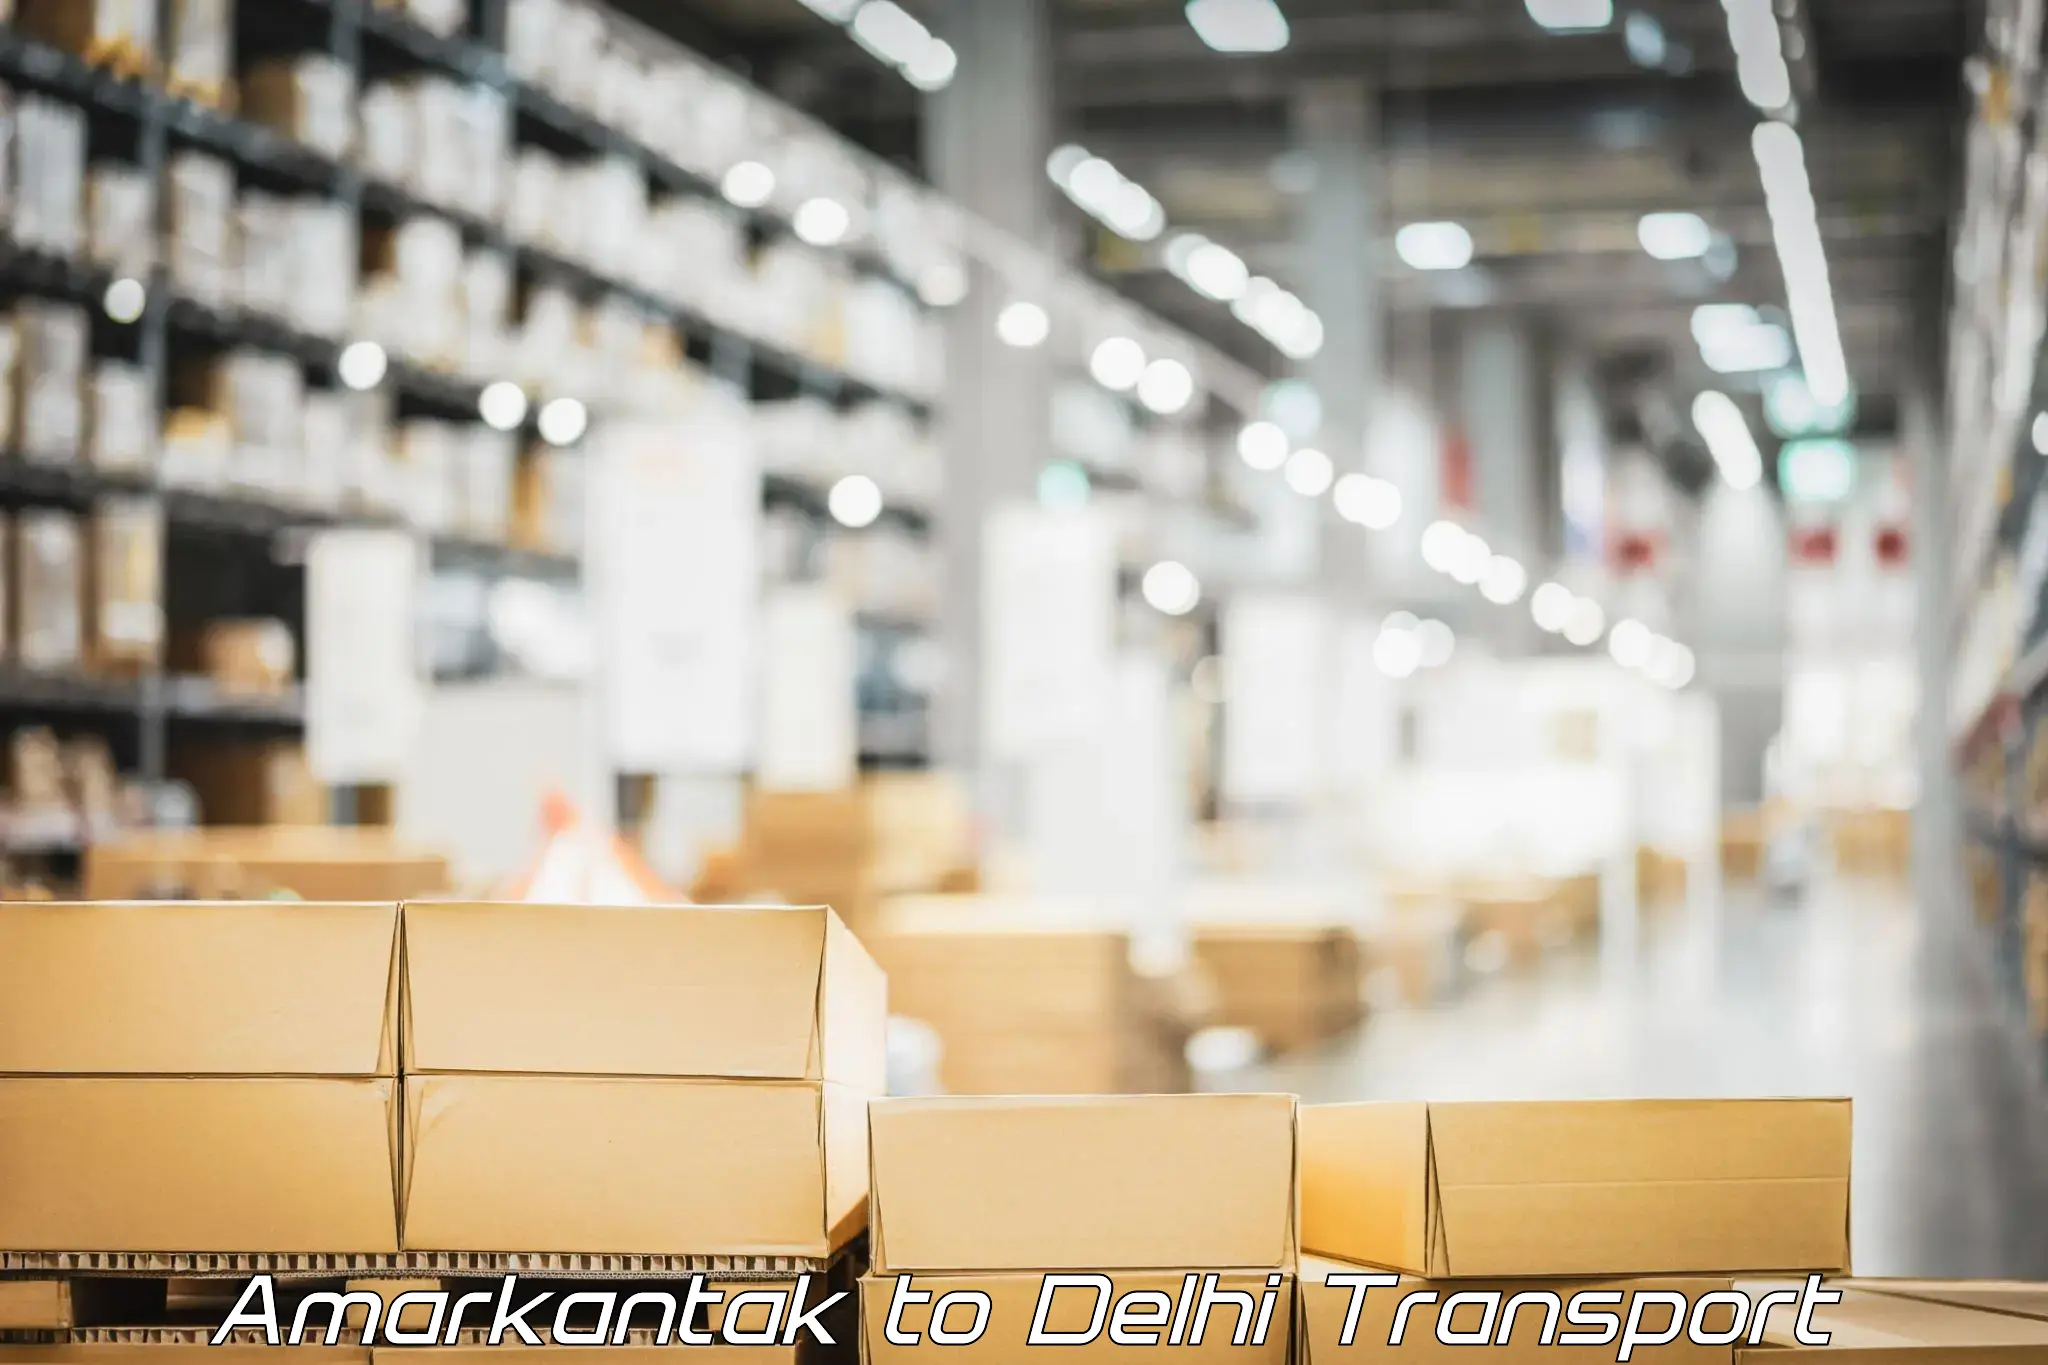 Express transport services Amarkantak to Delhi Technological University DTU